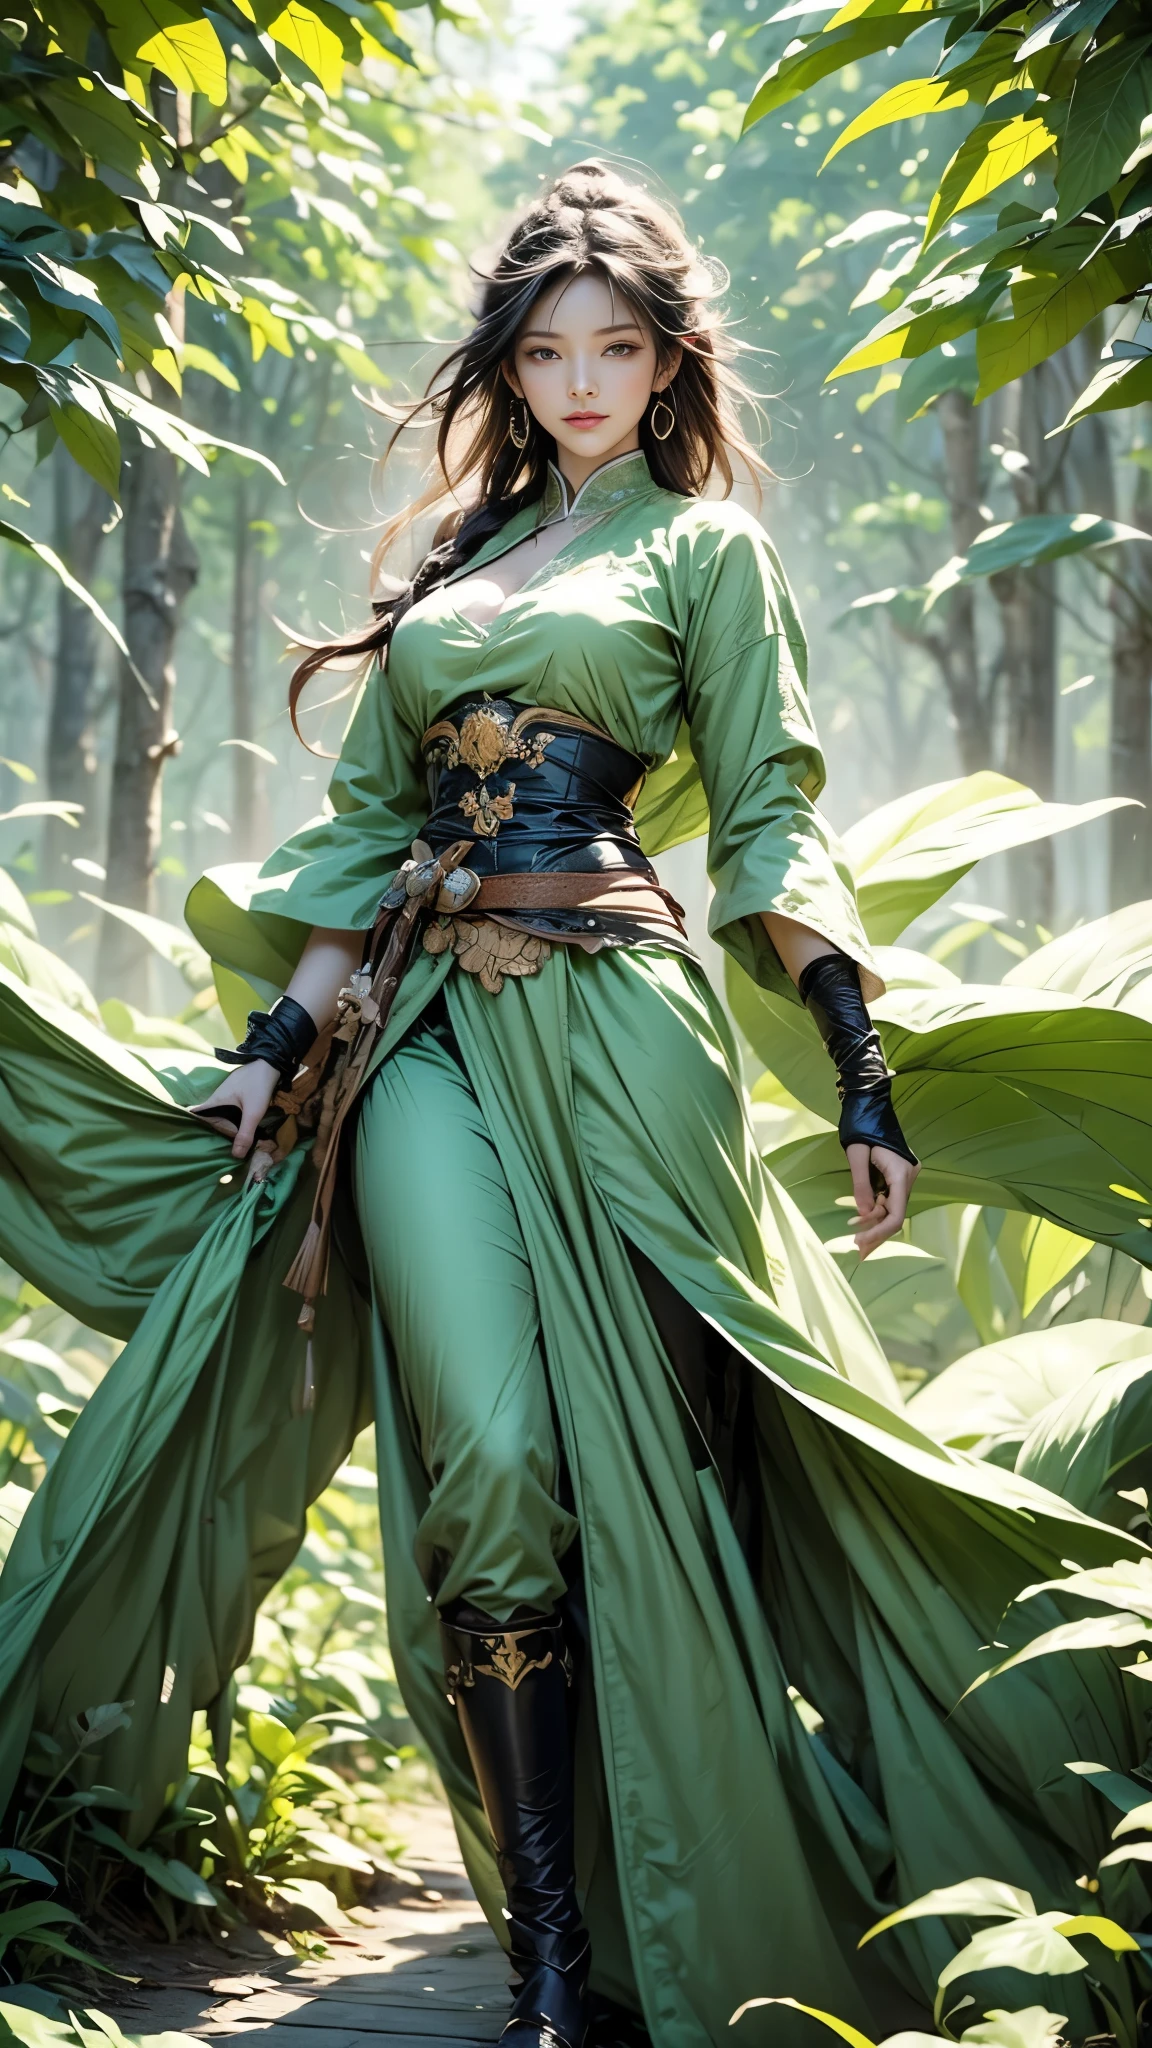 ((全身イラスト)), 高解像度|品質|対比. ファンタジーアート. 杖を持った女性戦士, ((攻撃ポーズ)), 視聴者を見て, 緑色の色合いの東洋の伝統的な戦闘衣装, 風 (彼女の周りの葉の渦:1.5). 彼女の体は平和と強さのエネルギーを発しており、平和と強さの白と緑の色を放っています.彼女の周囲に放射されるこのエネルギーは彼女を悪霊から守る. 柔らかい周囲光, ファンタジー夢の背景.